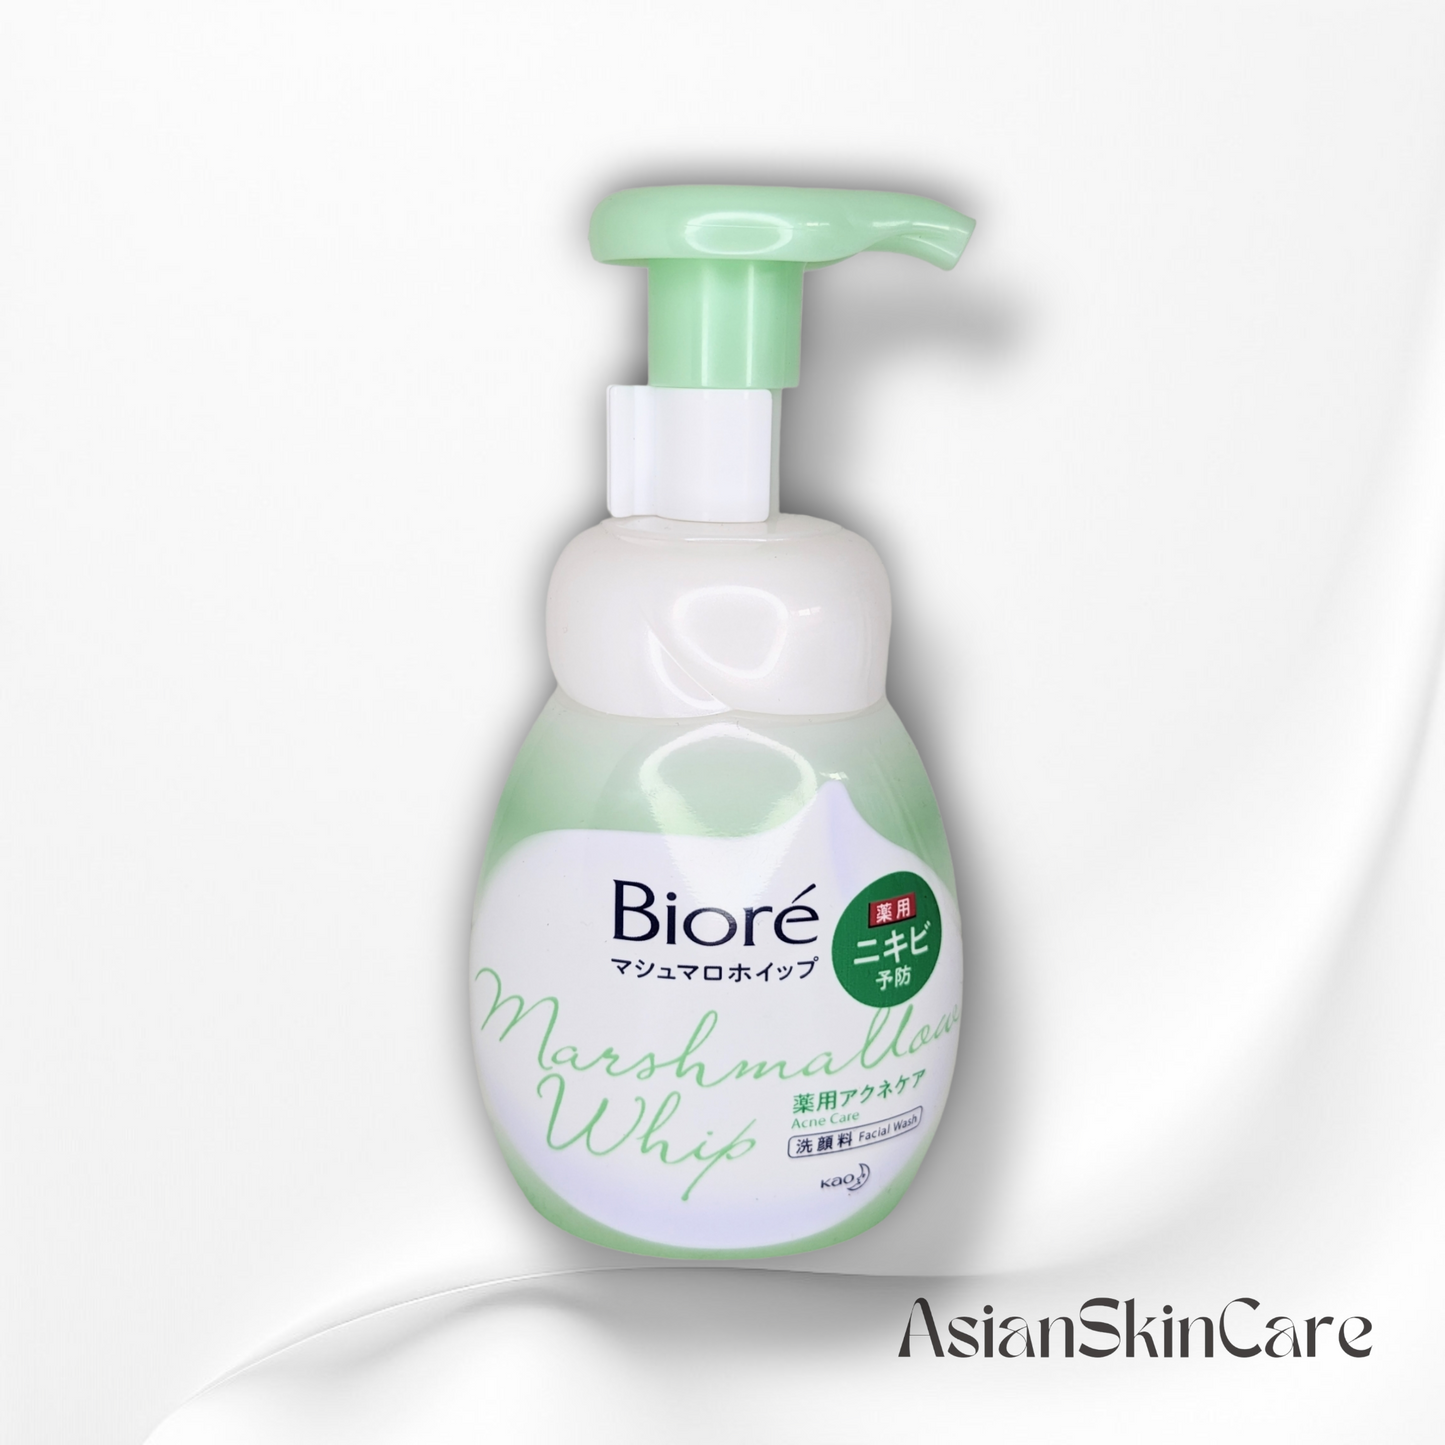 Nettoyant visage moussant - Biore Marshmallow Whip - 150ml : Pour lutter contre l'acné